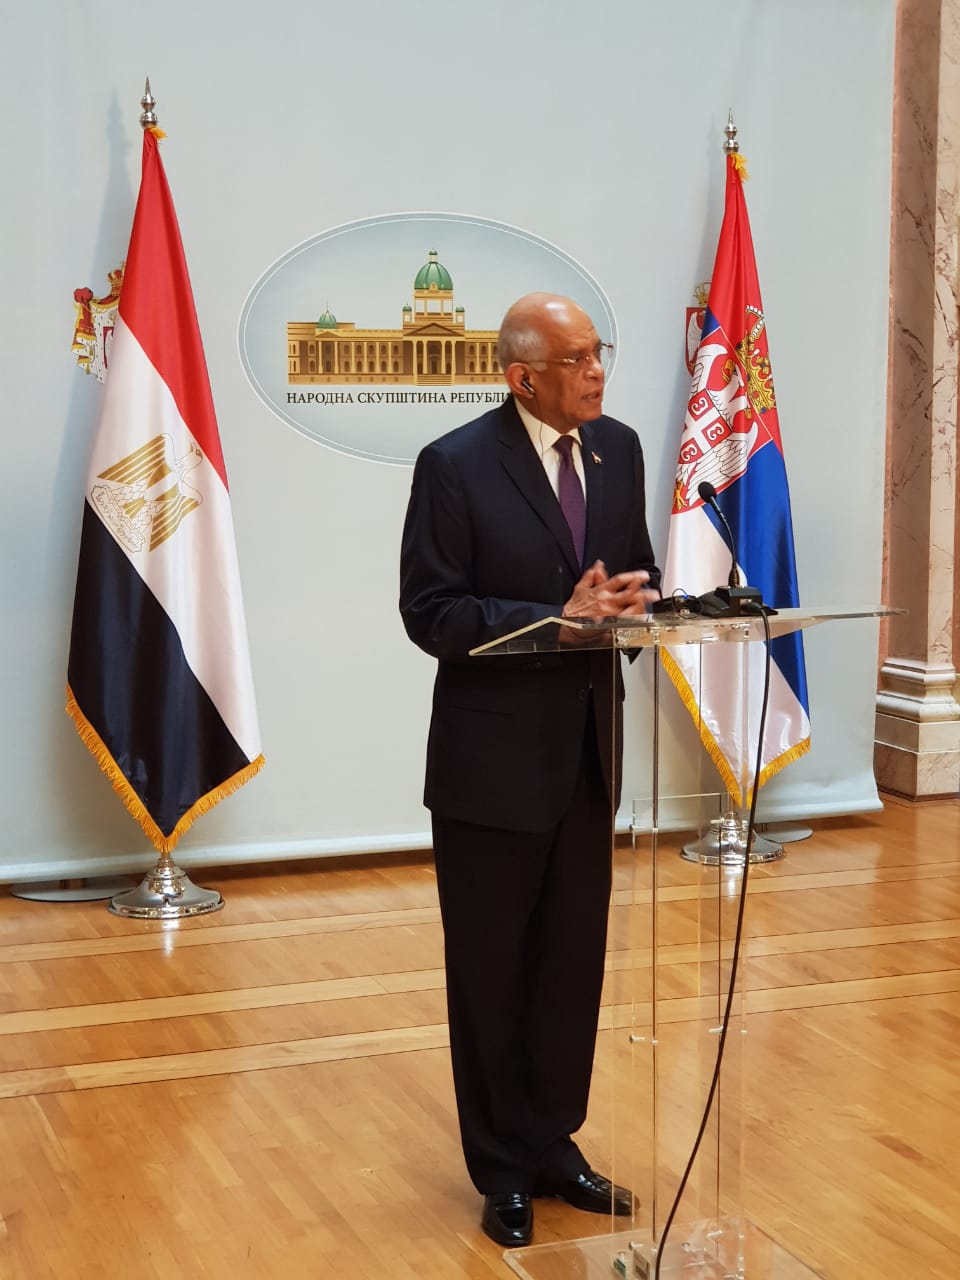  الدكتور على عبد العال رئيس مجلس النواب يزور البرلمان الصربى (10)